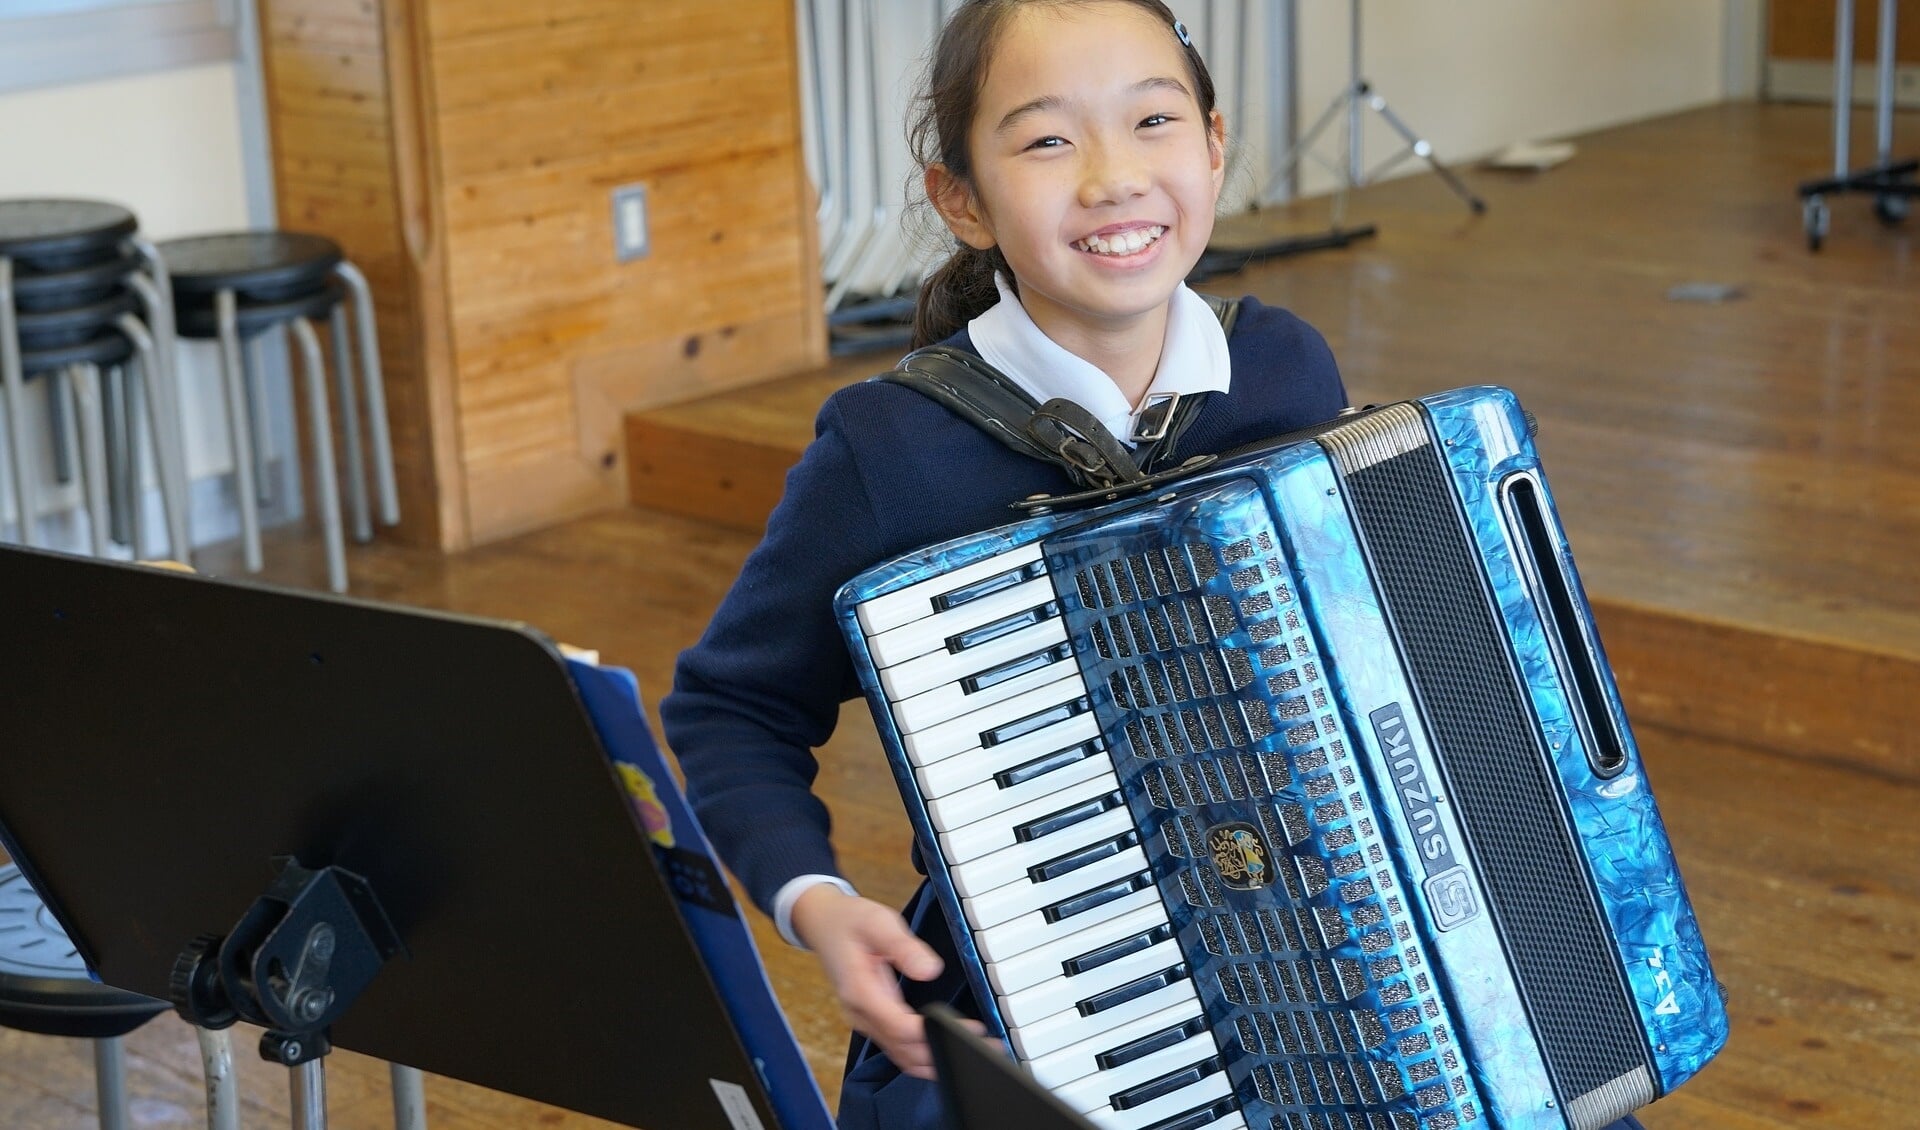 Kinderen van 5 en 6 jaar die accordeon willen leren spelen zijn welkom met hun ouders voor meer info in de Draai. 